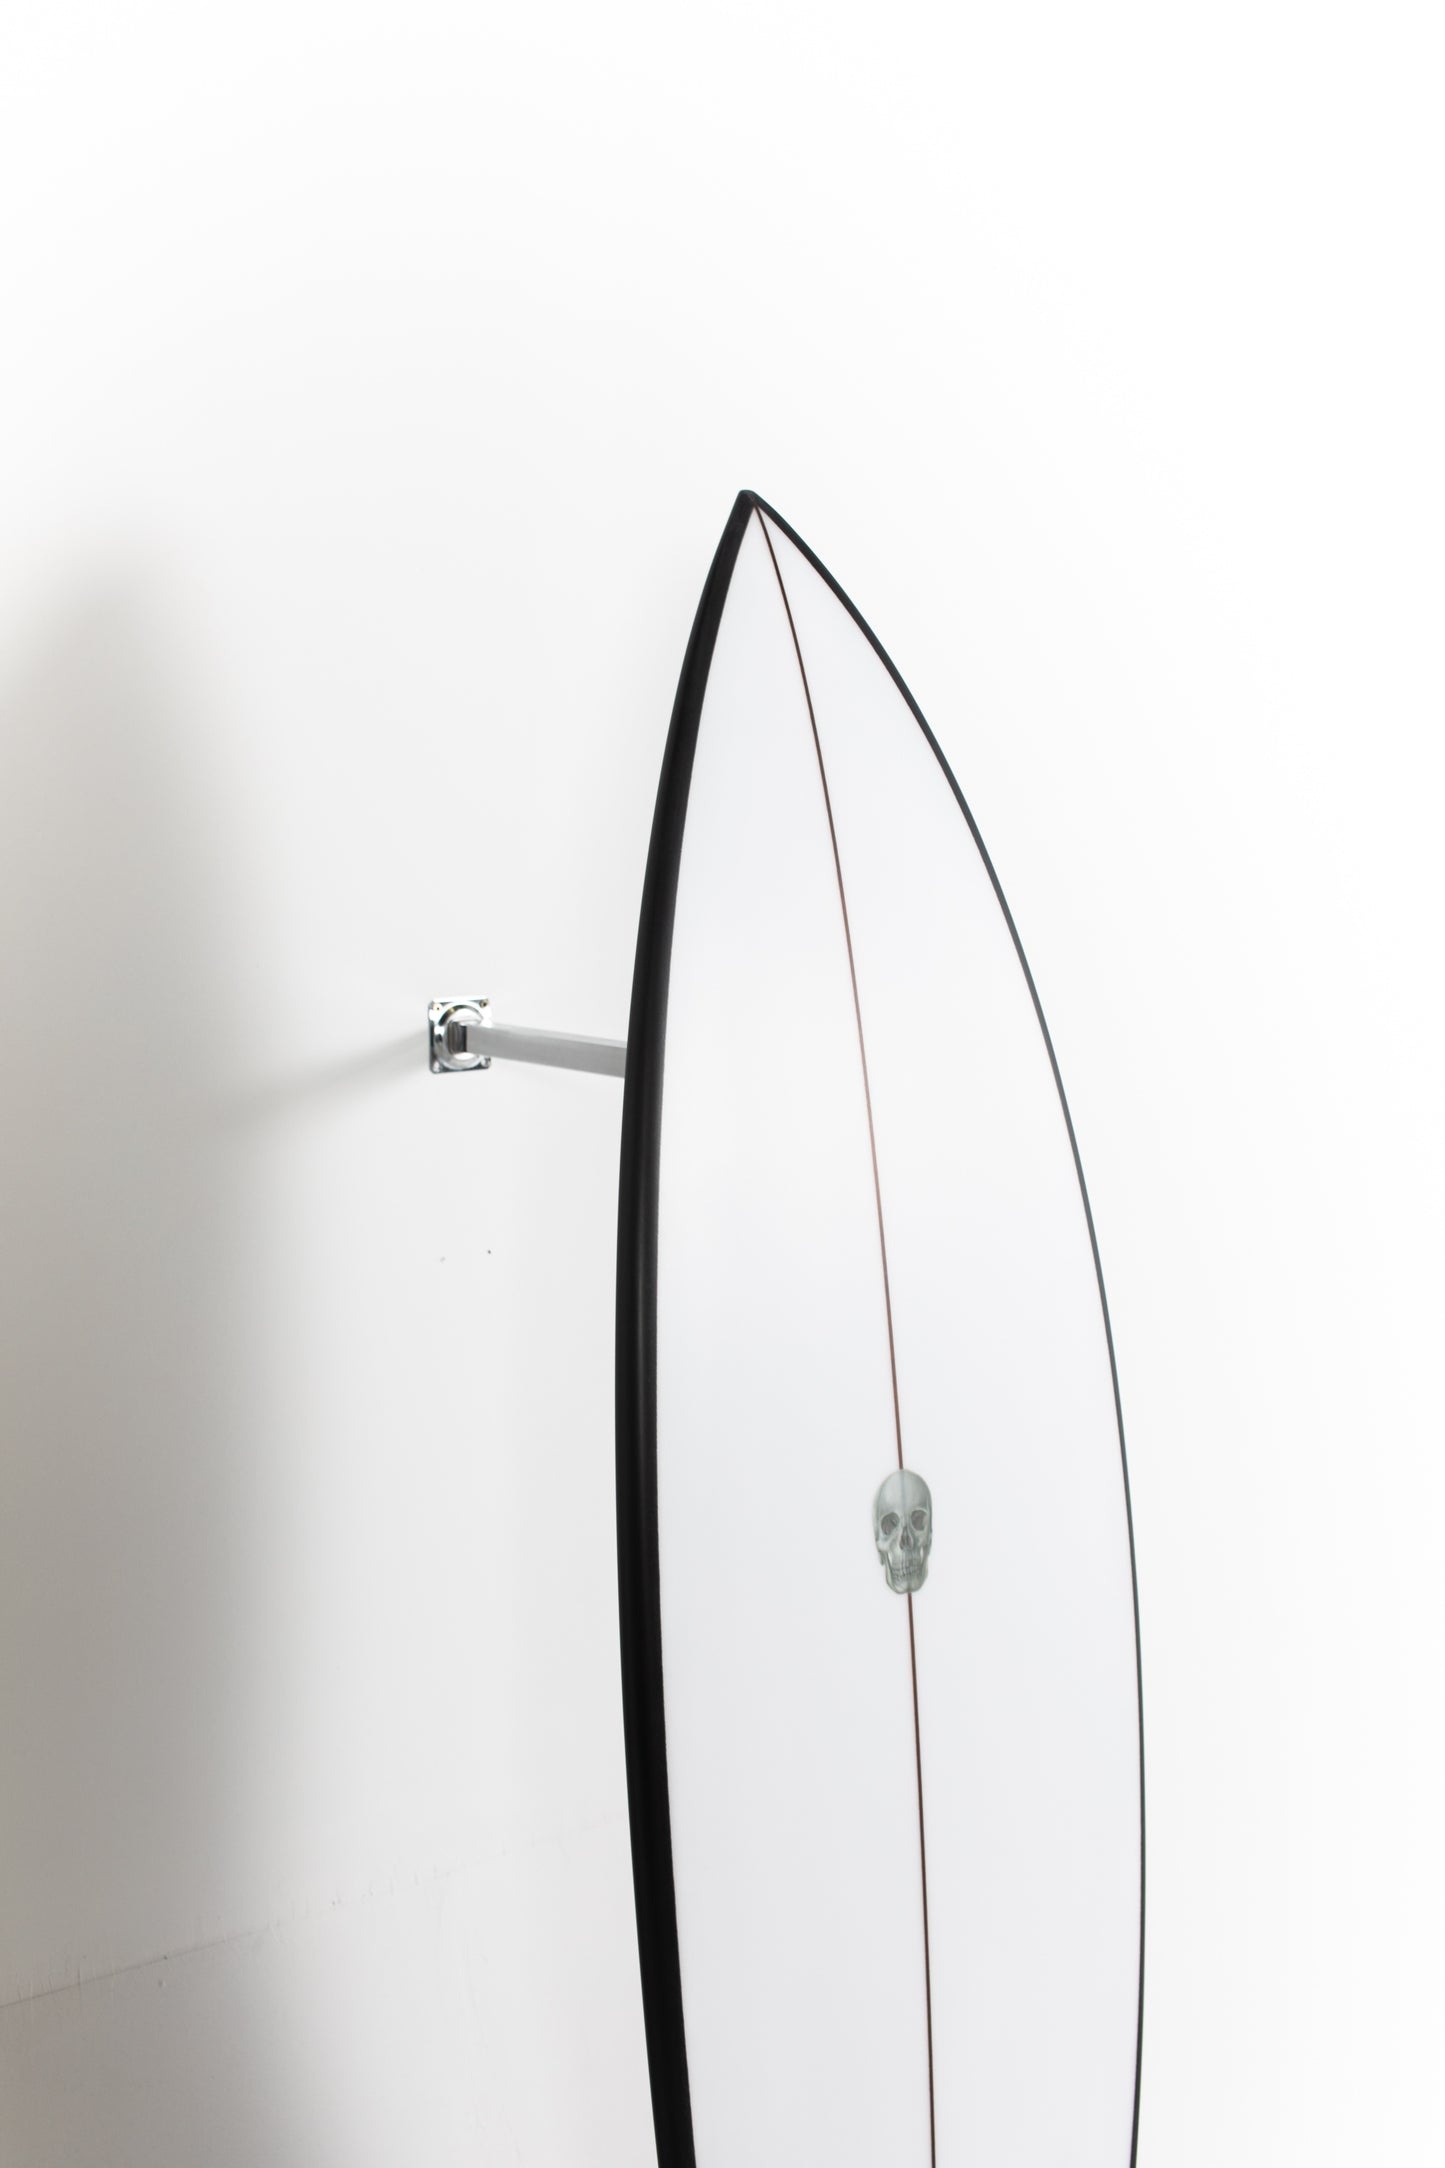 
                  
                    Pukas Surf Shop - Christenson Surfboards - OP1 - 5'6" x 19 x 2 3/8 x 26,23L - CX04799
                  
                